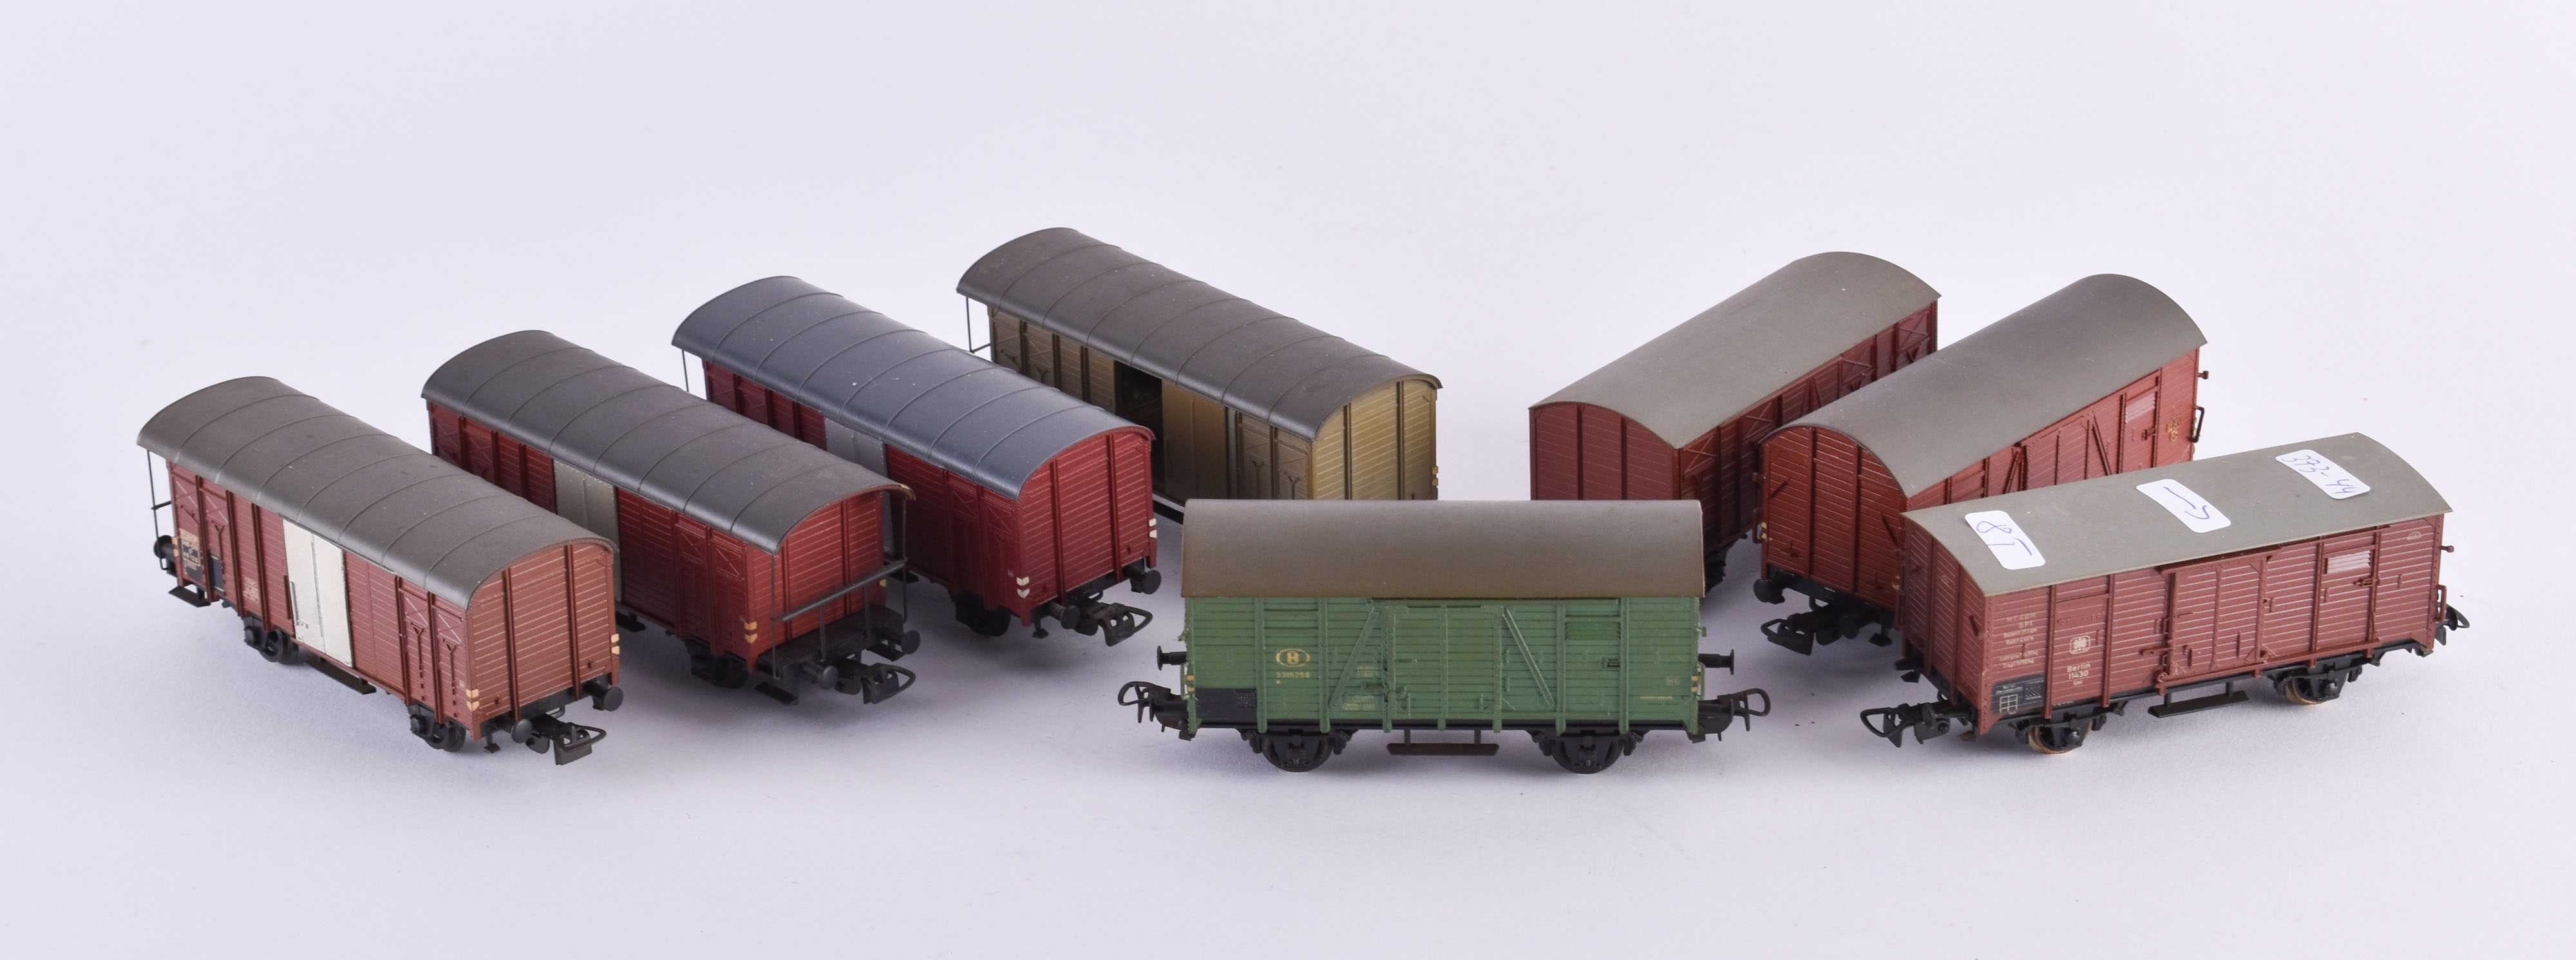 4 Güterwagen 46120 und 4 Güterwagen 3315256 Piko